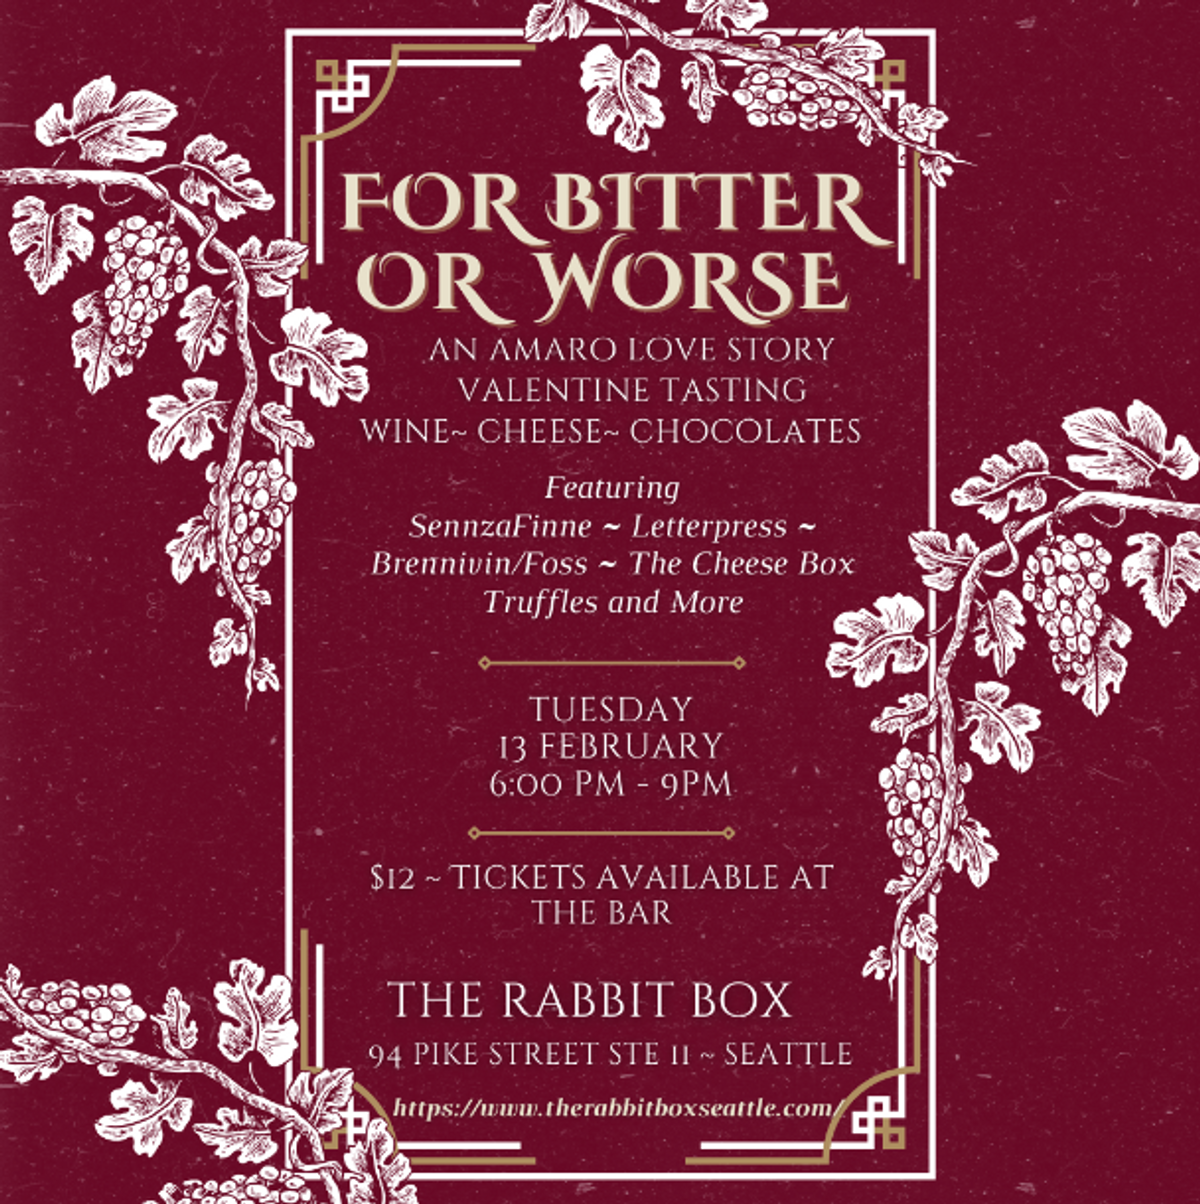 苦涩的爱情故事：西雅图The Rabbit Box剧院上演的Amro爱情故事 - 2月13日星期二